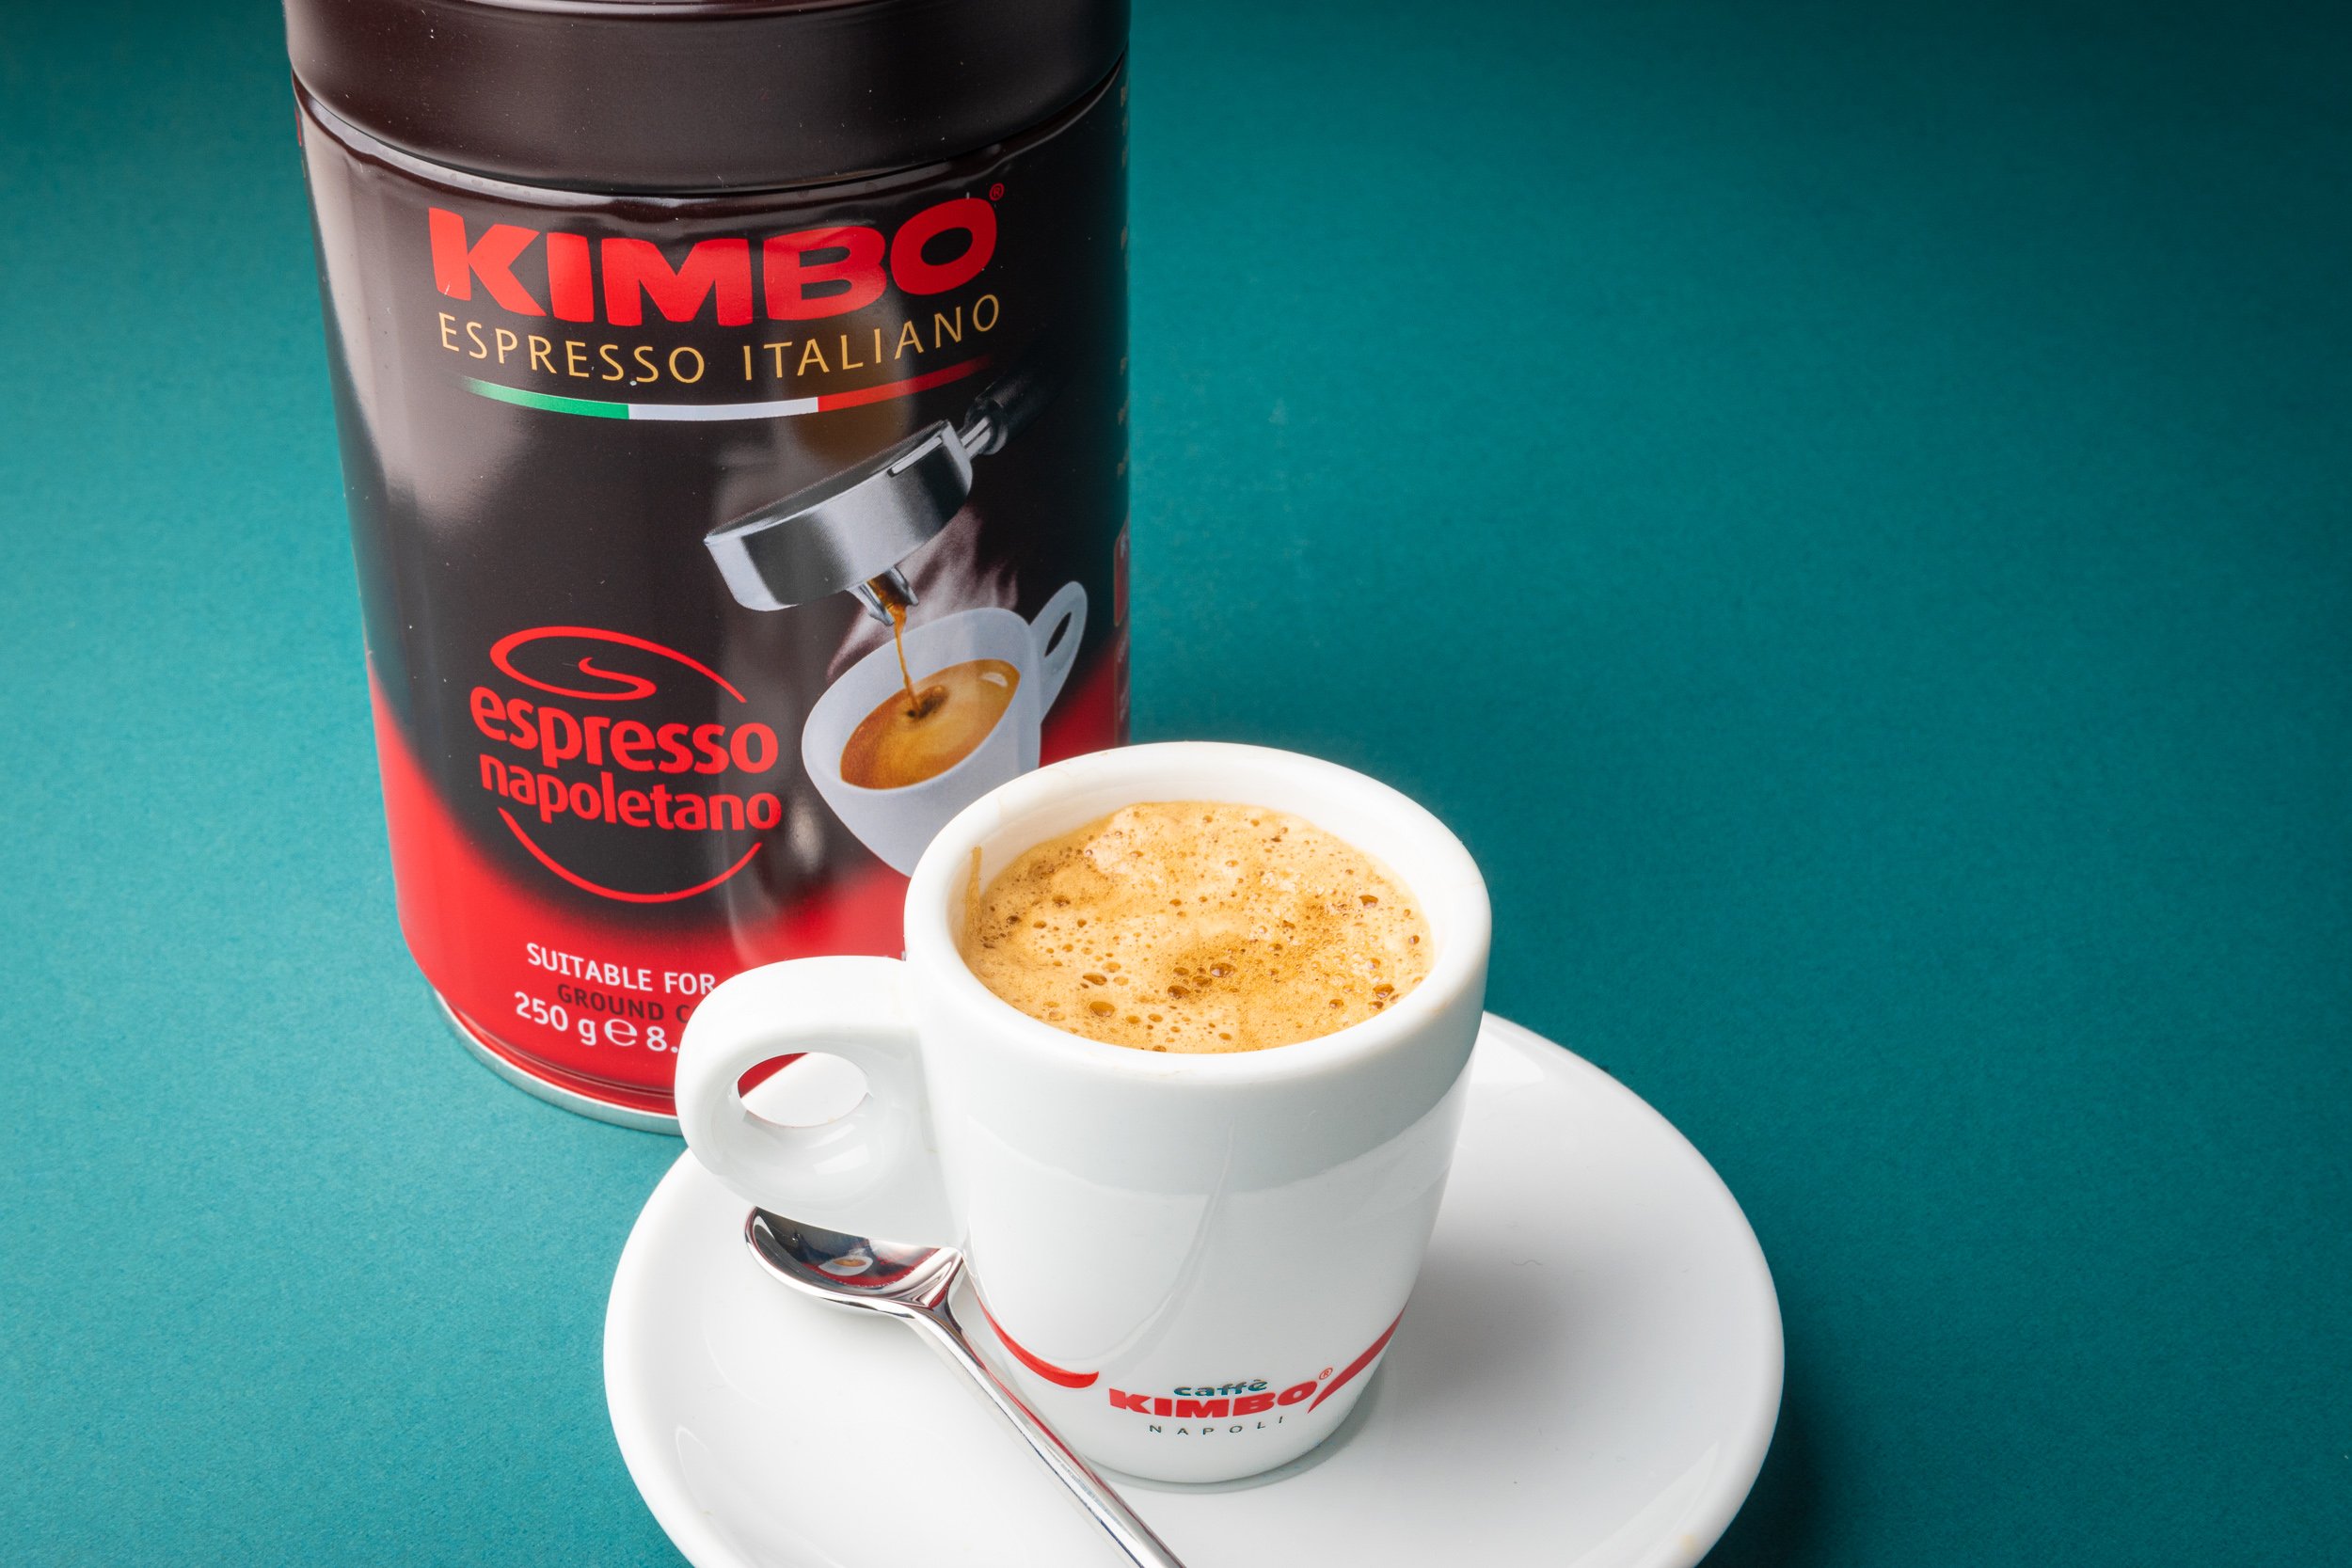 Italian coffee roasters -  Kimbo from Naples